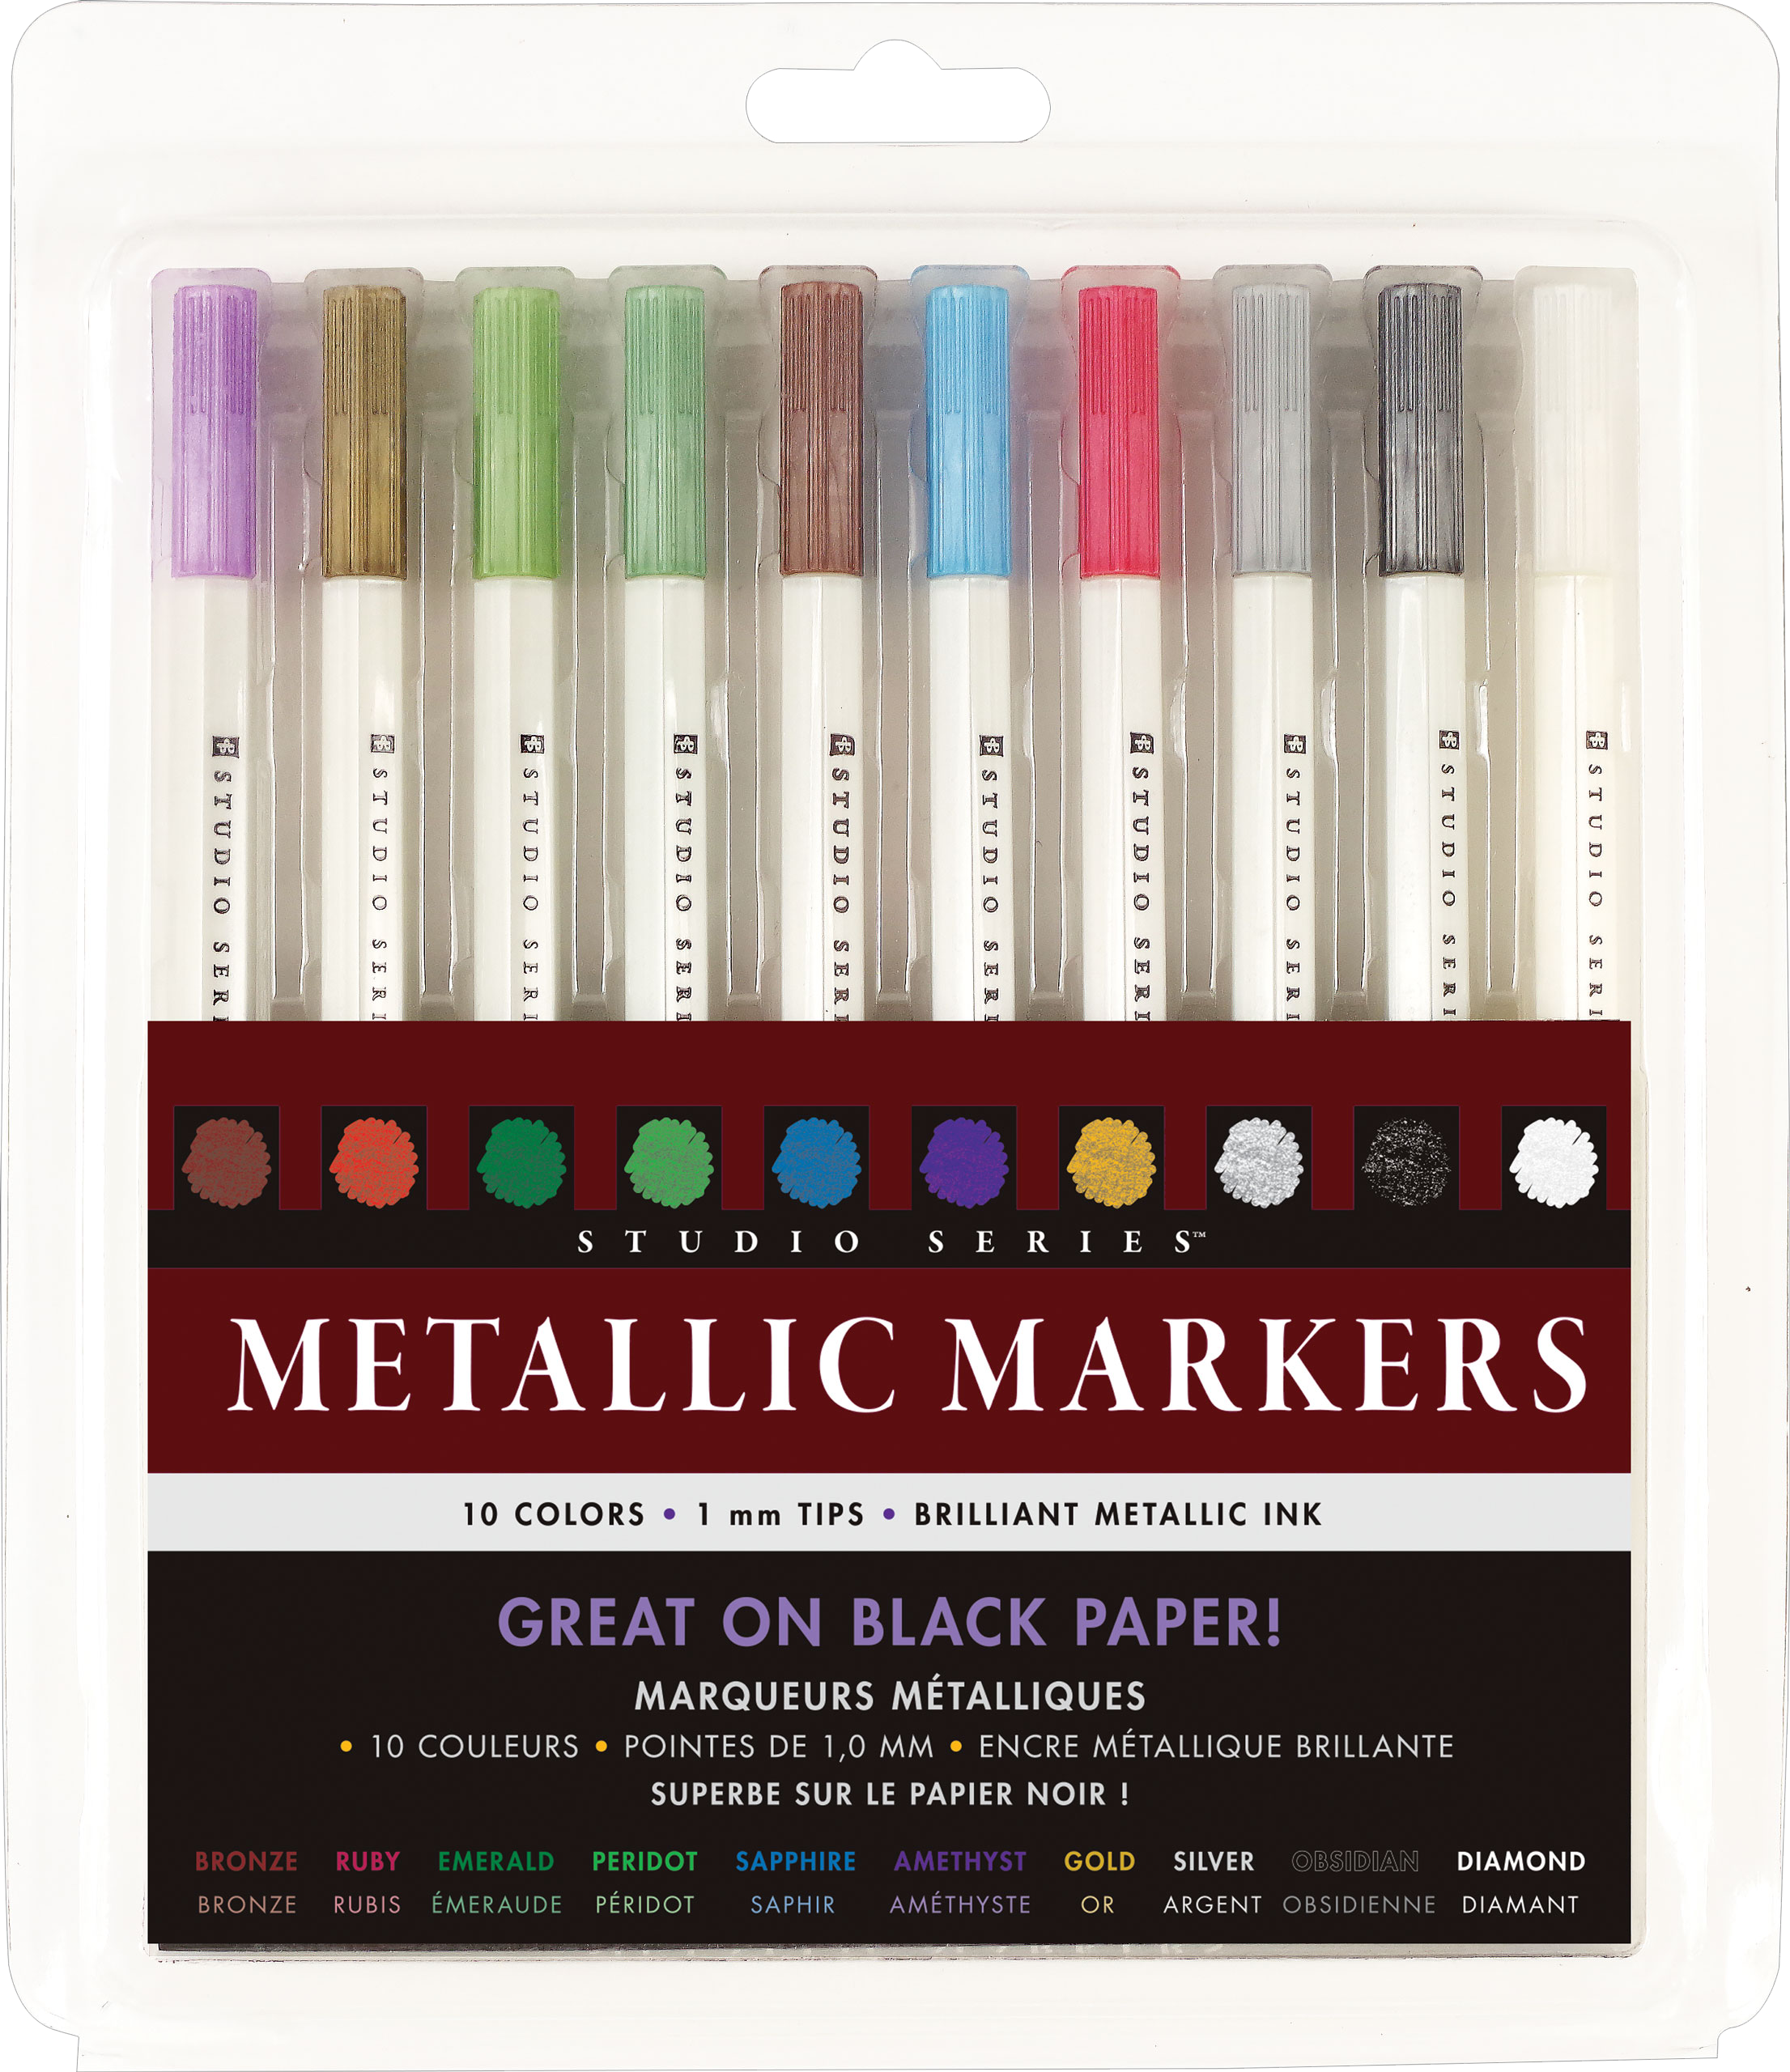 Studio Series Metallic Outline Markers (Set of 12)